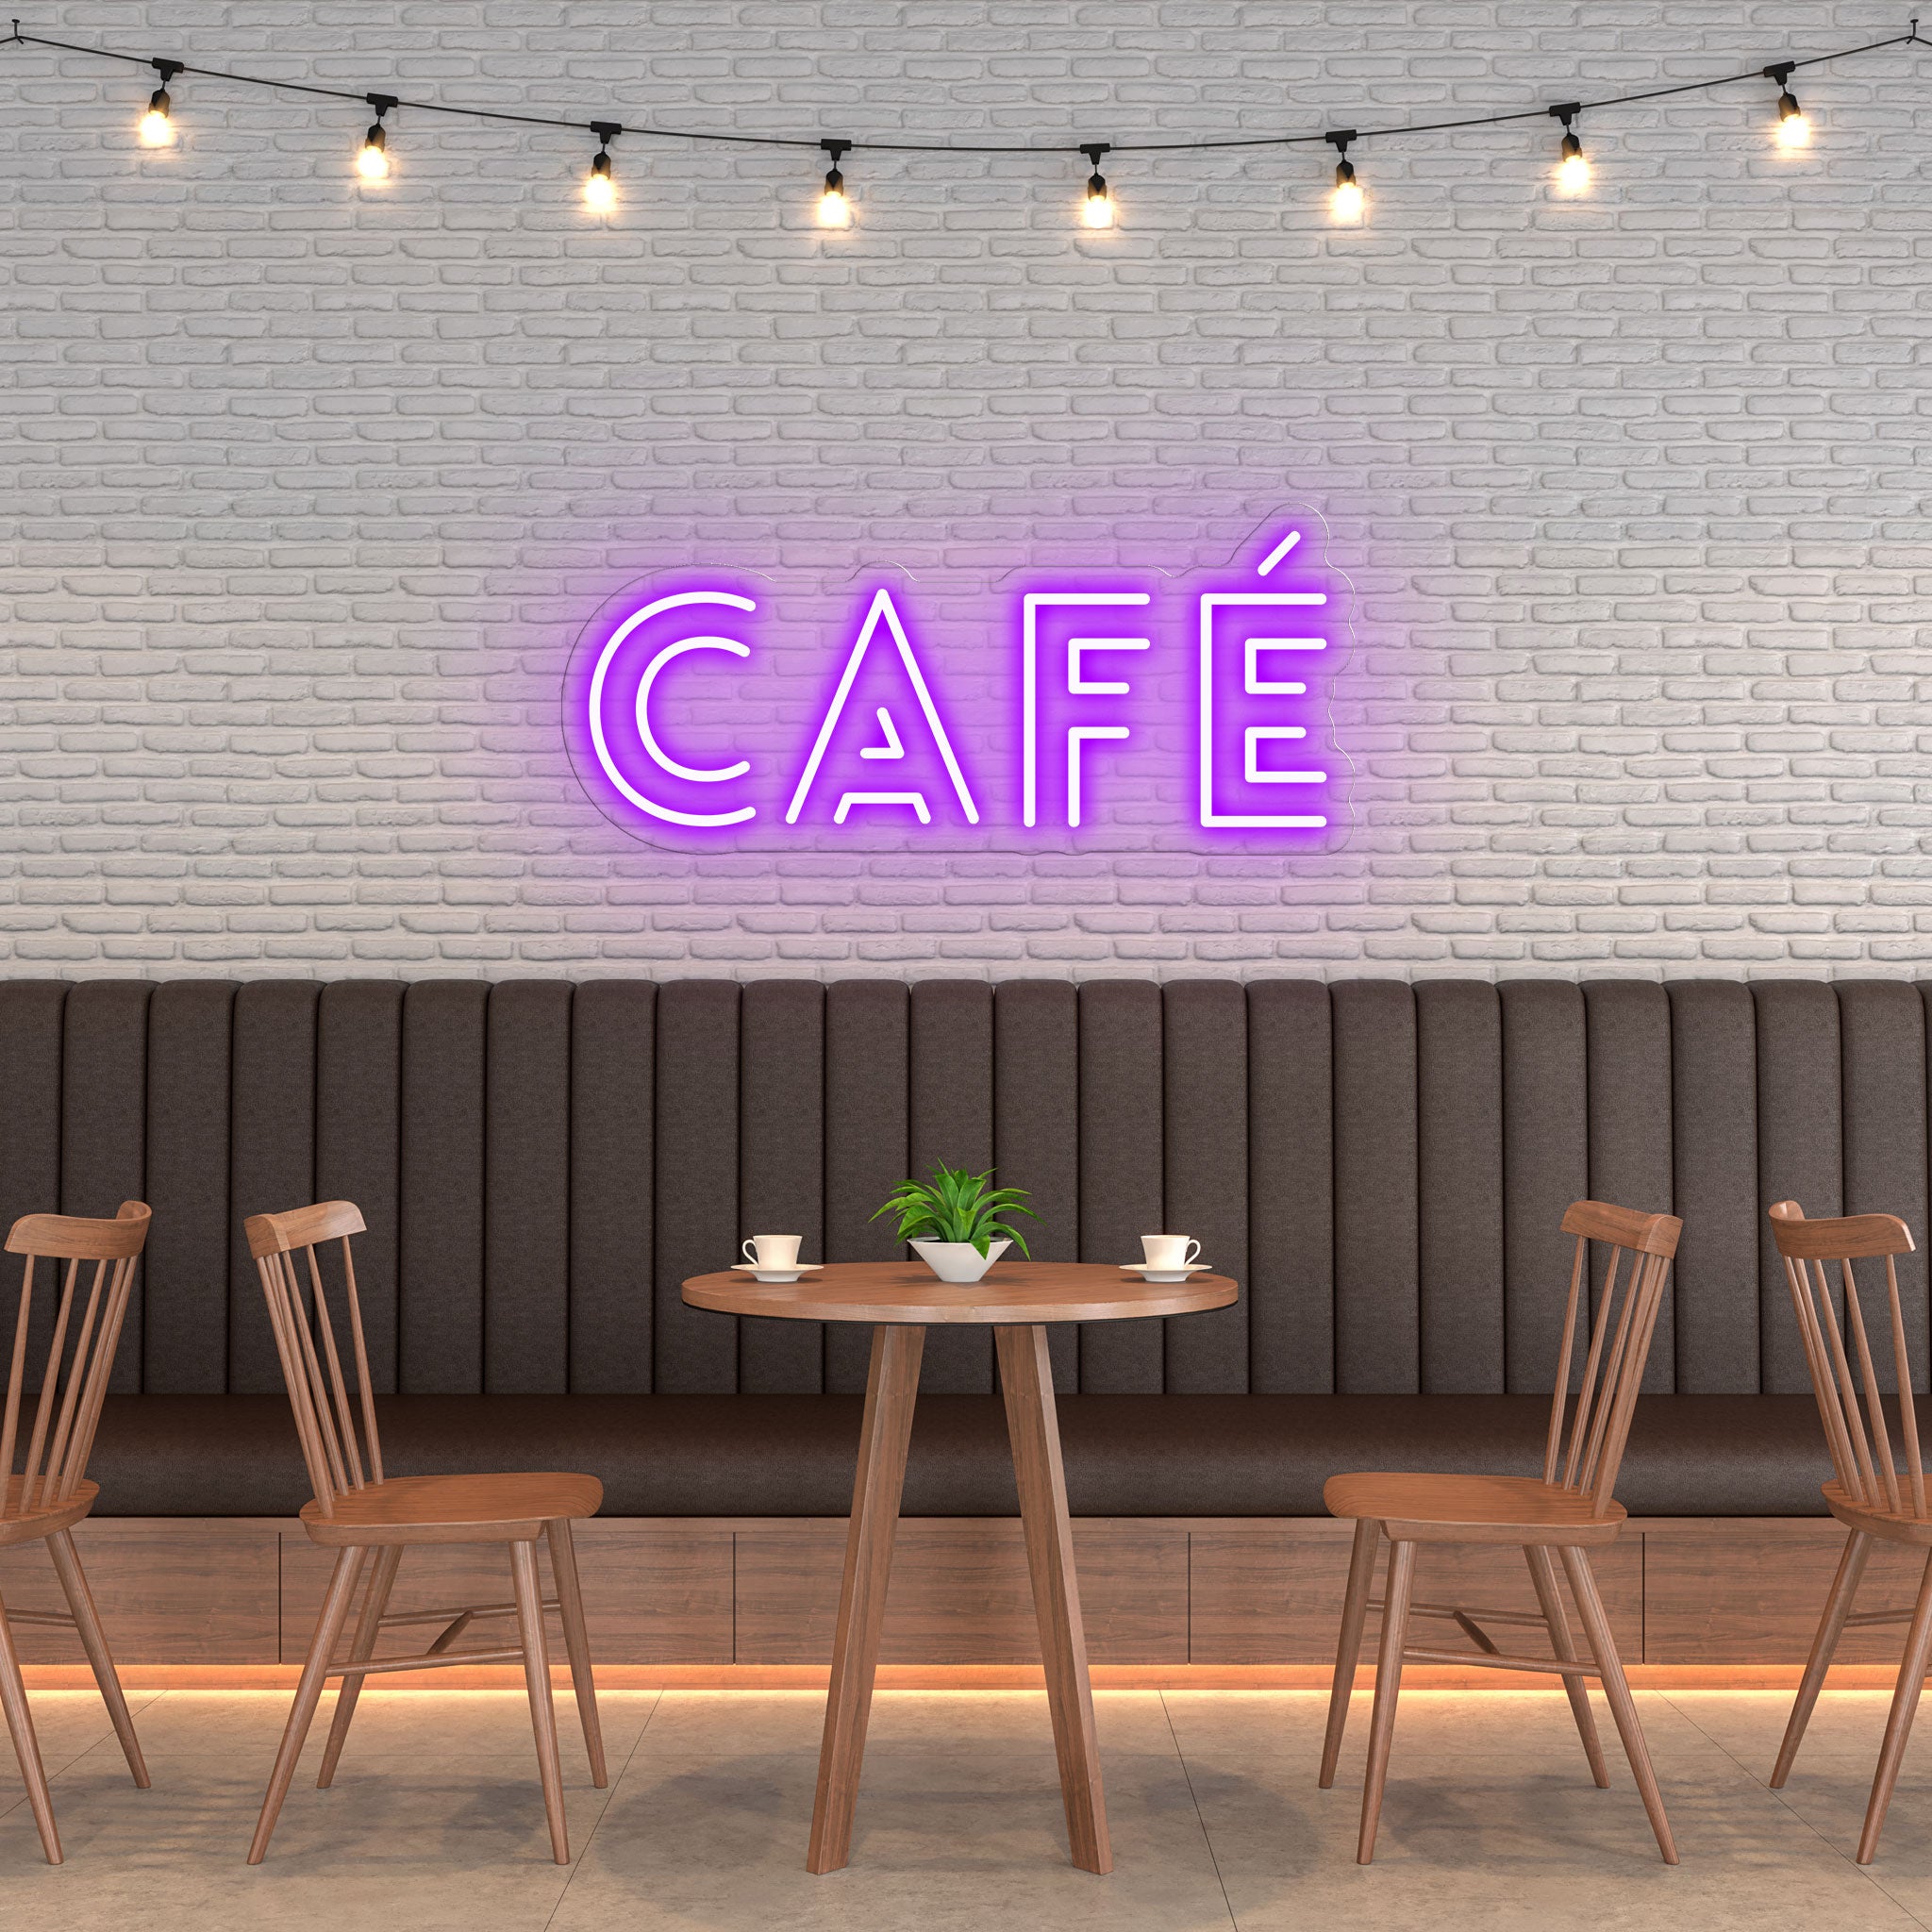 Café - Neon Sign - Café Venue